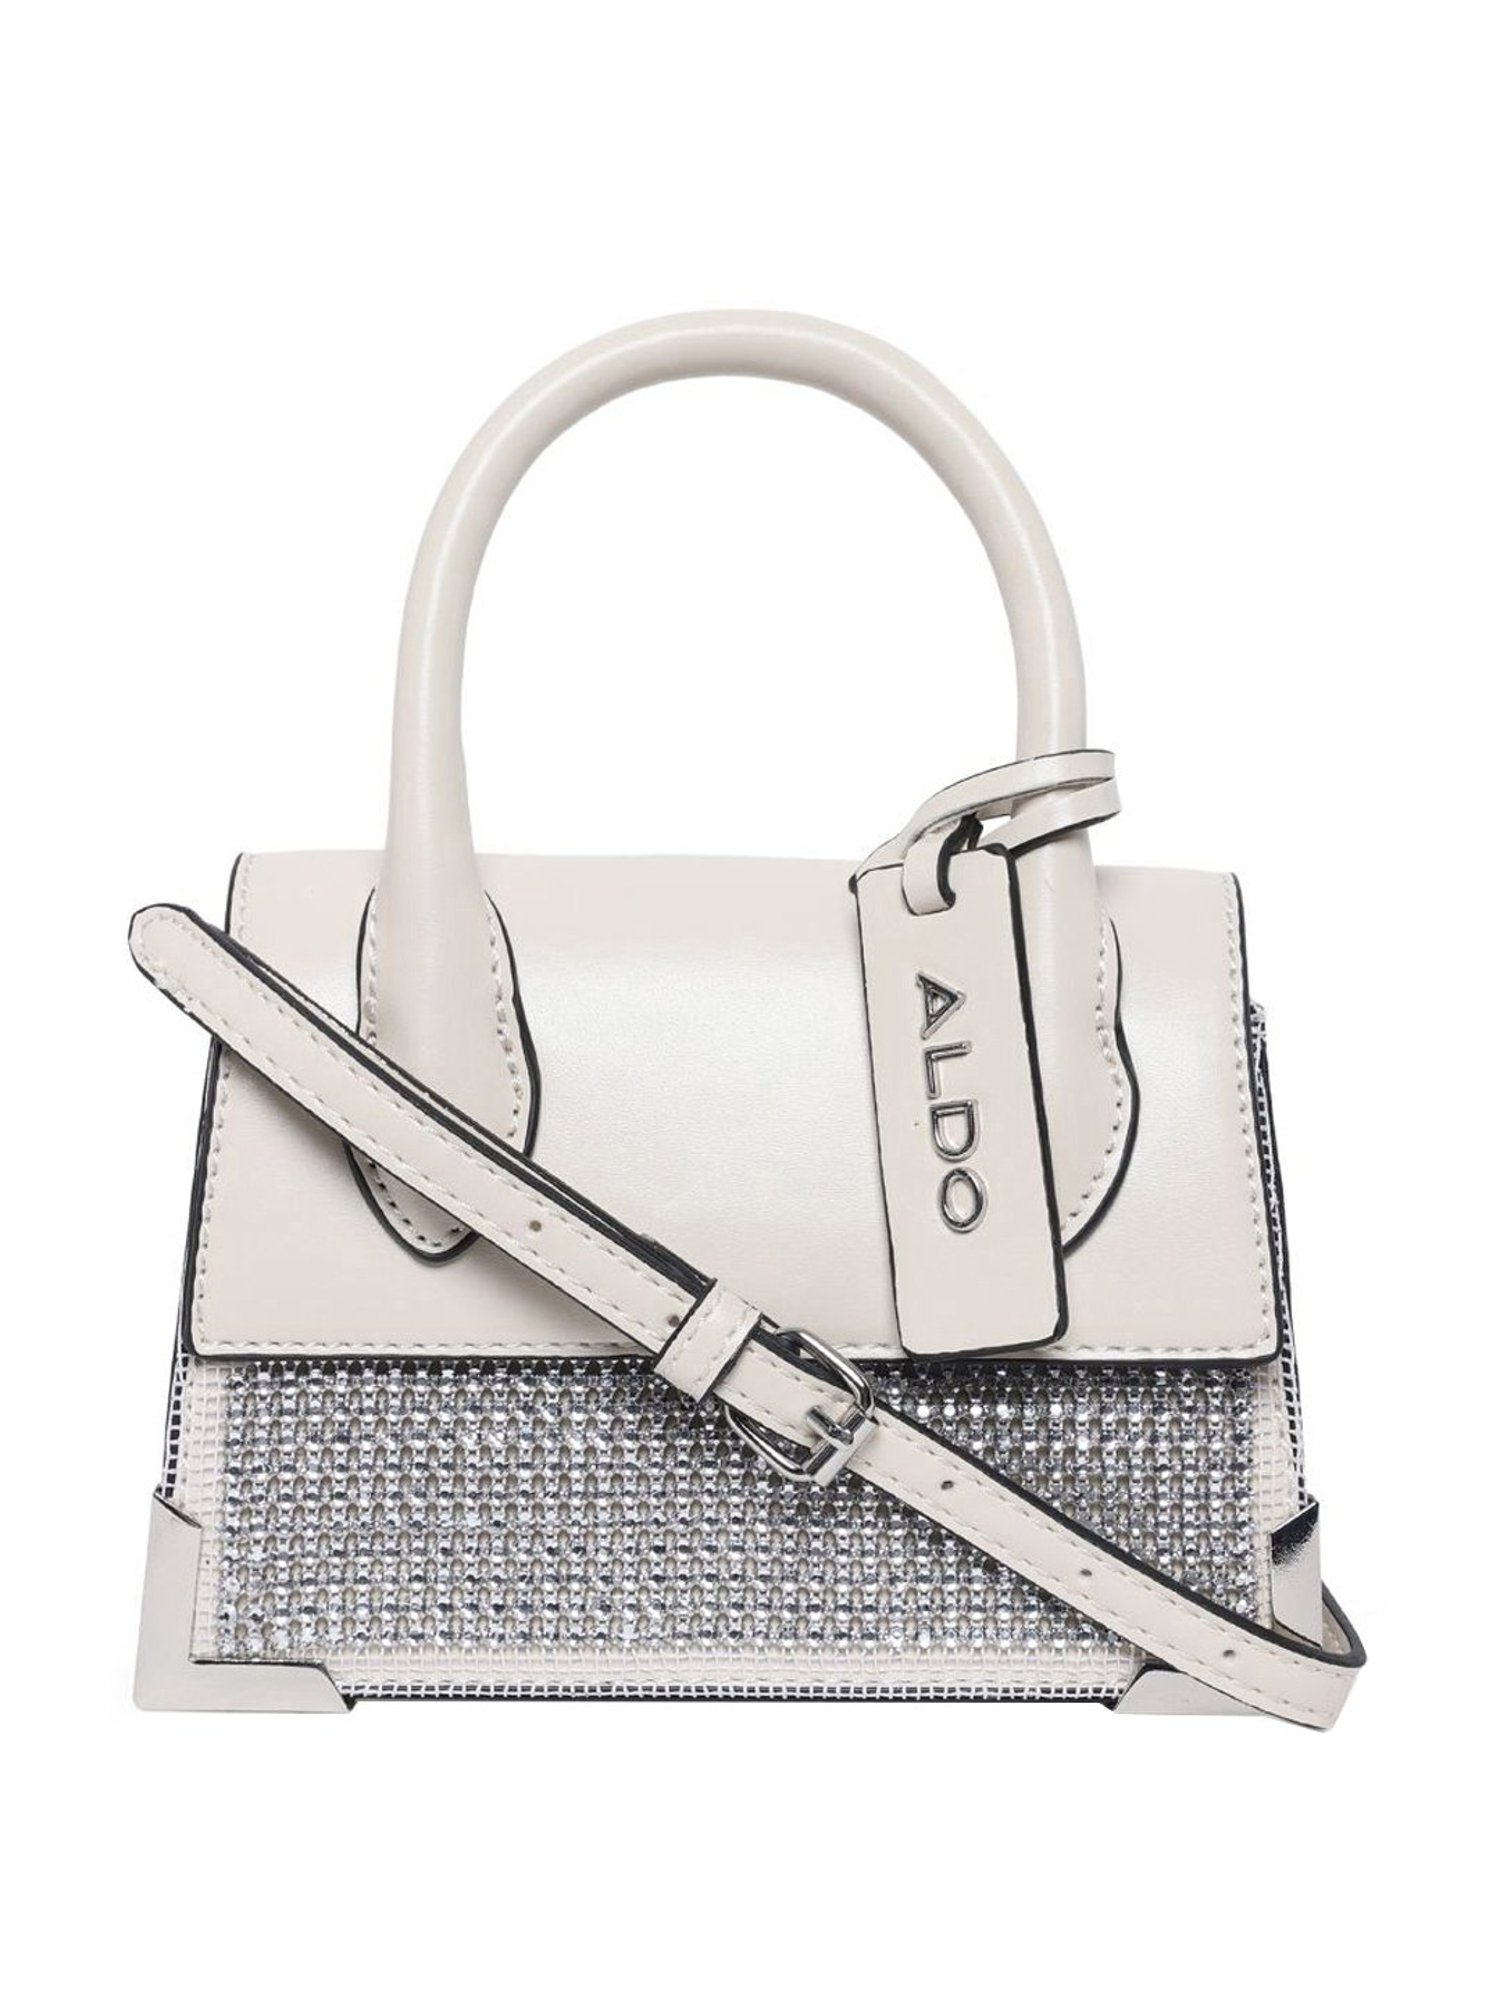 ALDO Superfly | Aldo handbags, Fashion handbags, High fashion handbags